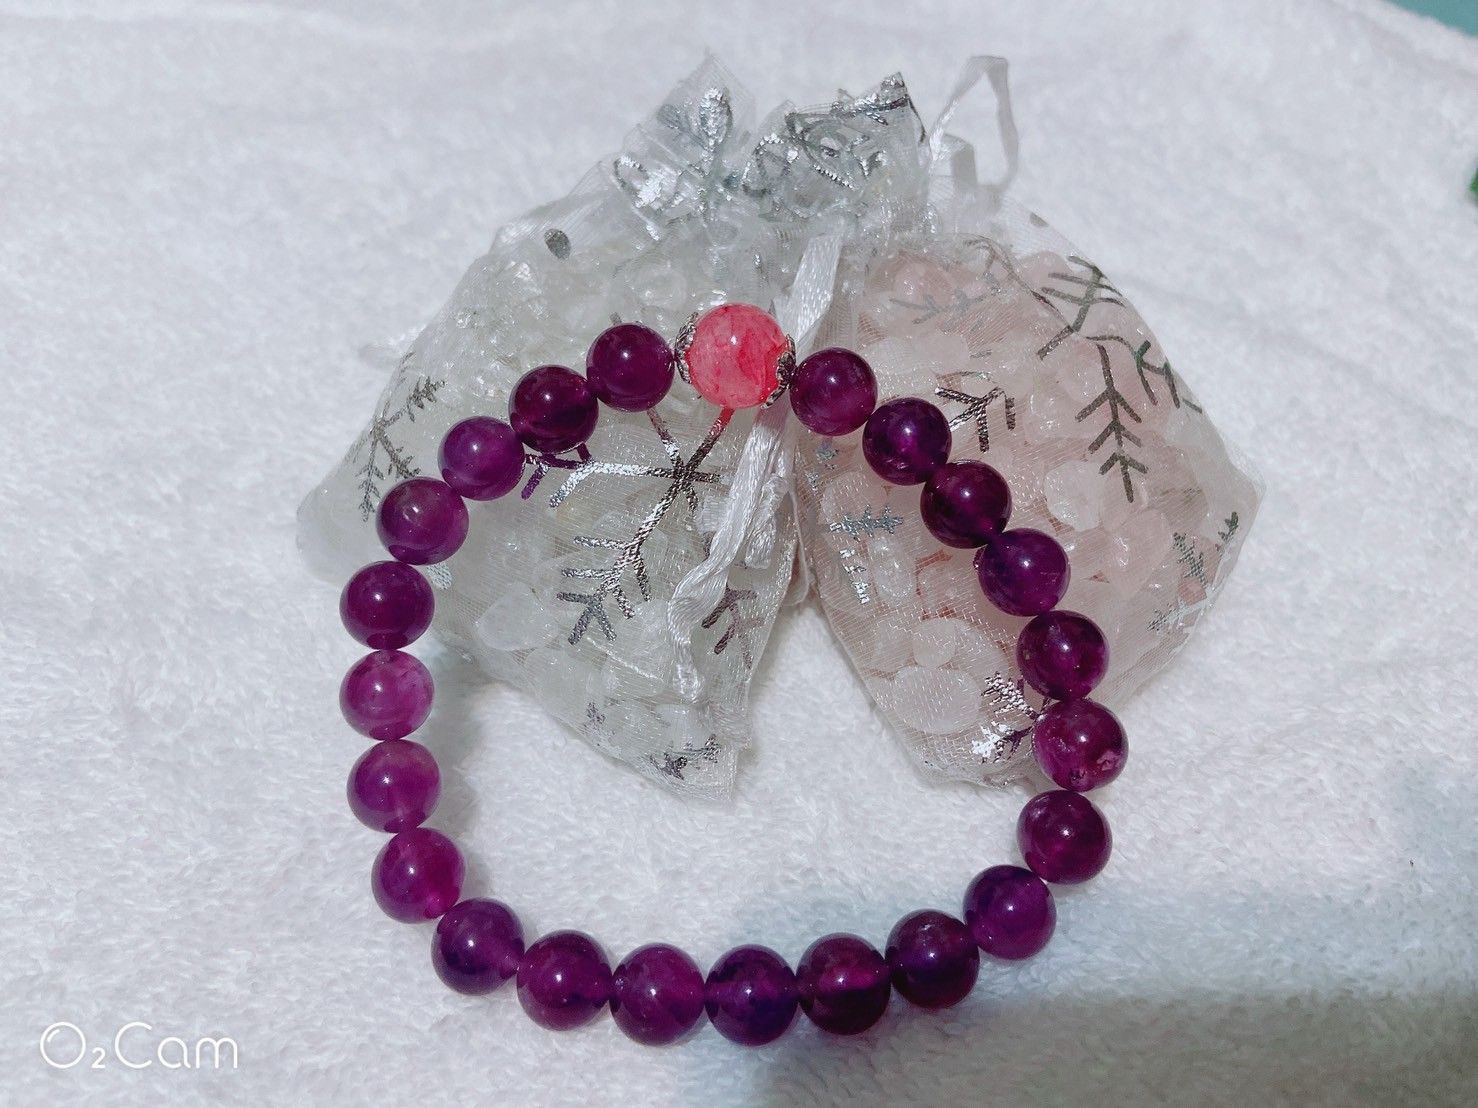 能量水晶念珠 – 紫水晶、草莓晶念珠